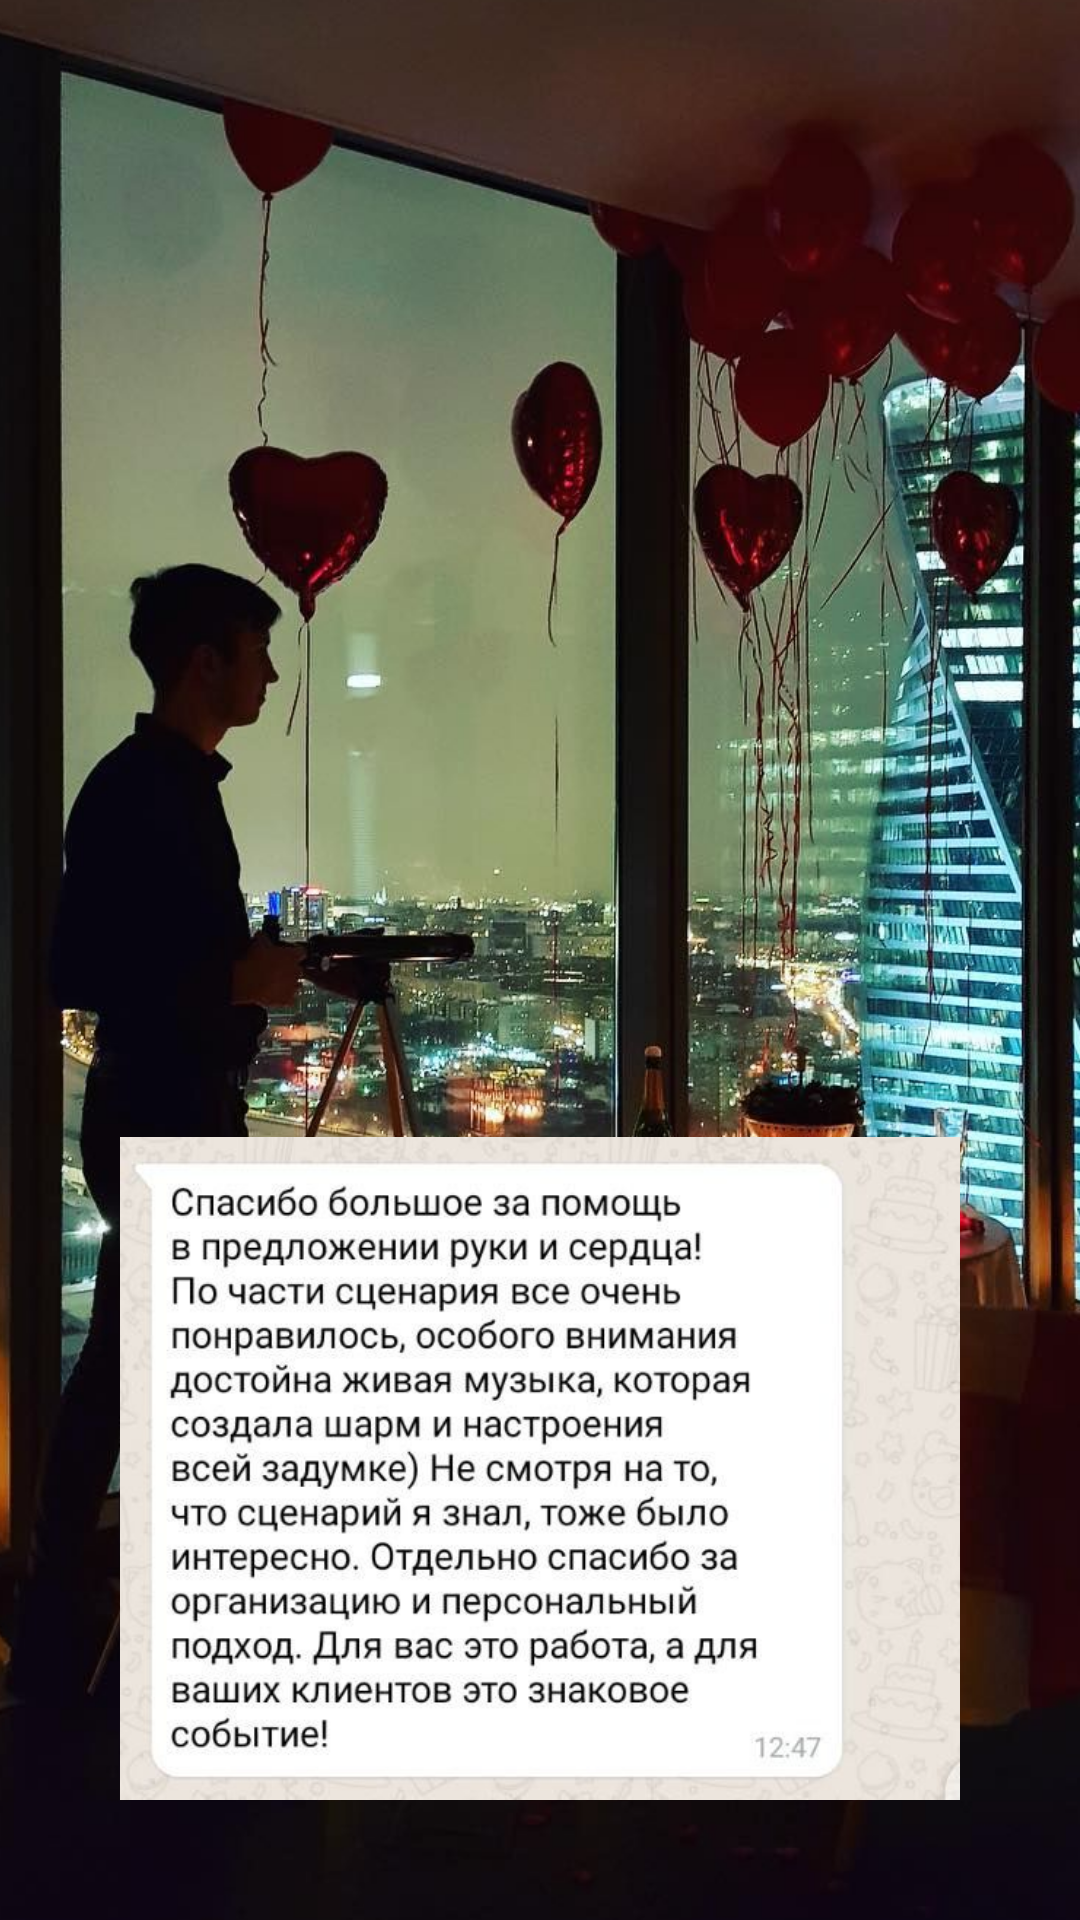 Организация предложения руки и сердца в Казани
от компании Pandaevent